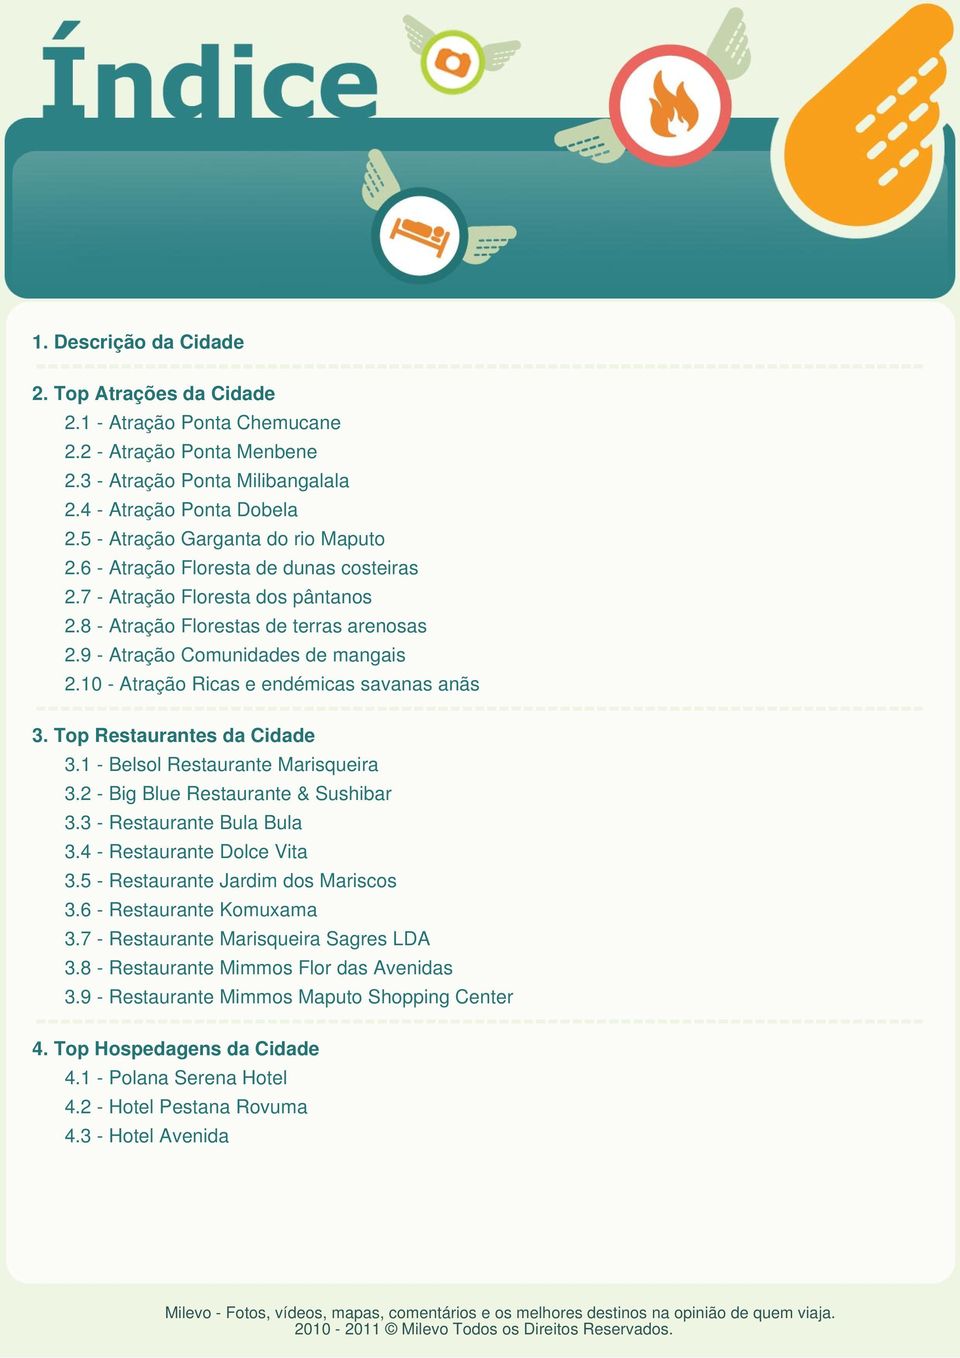 10 - Atração Ricas e endémicas savanas anãs 3. Top Restaurantes da Cidade 3.1 - Belsol Restaurante Marisqueira 3.2 - Big Blue Restaurante & Sushibar 3.3 - Restaurante Bula Bula 3.